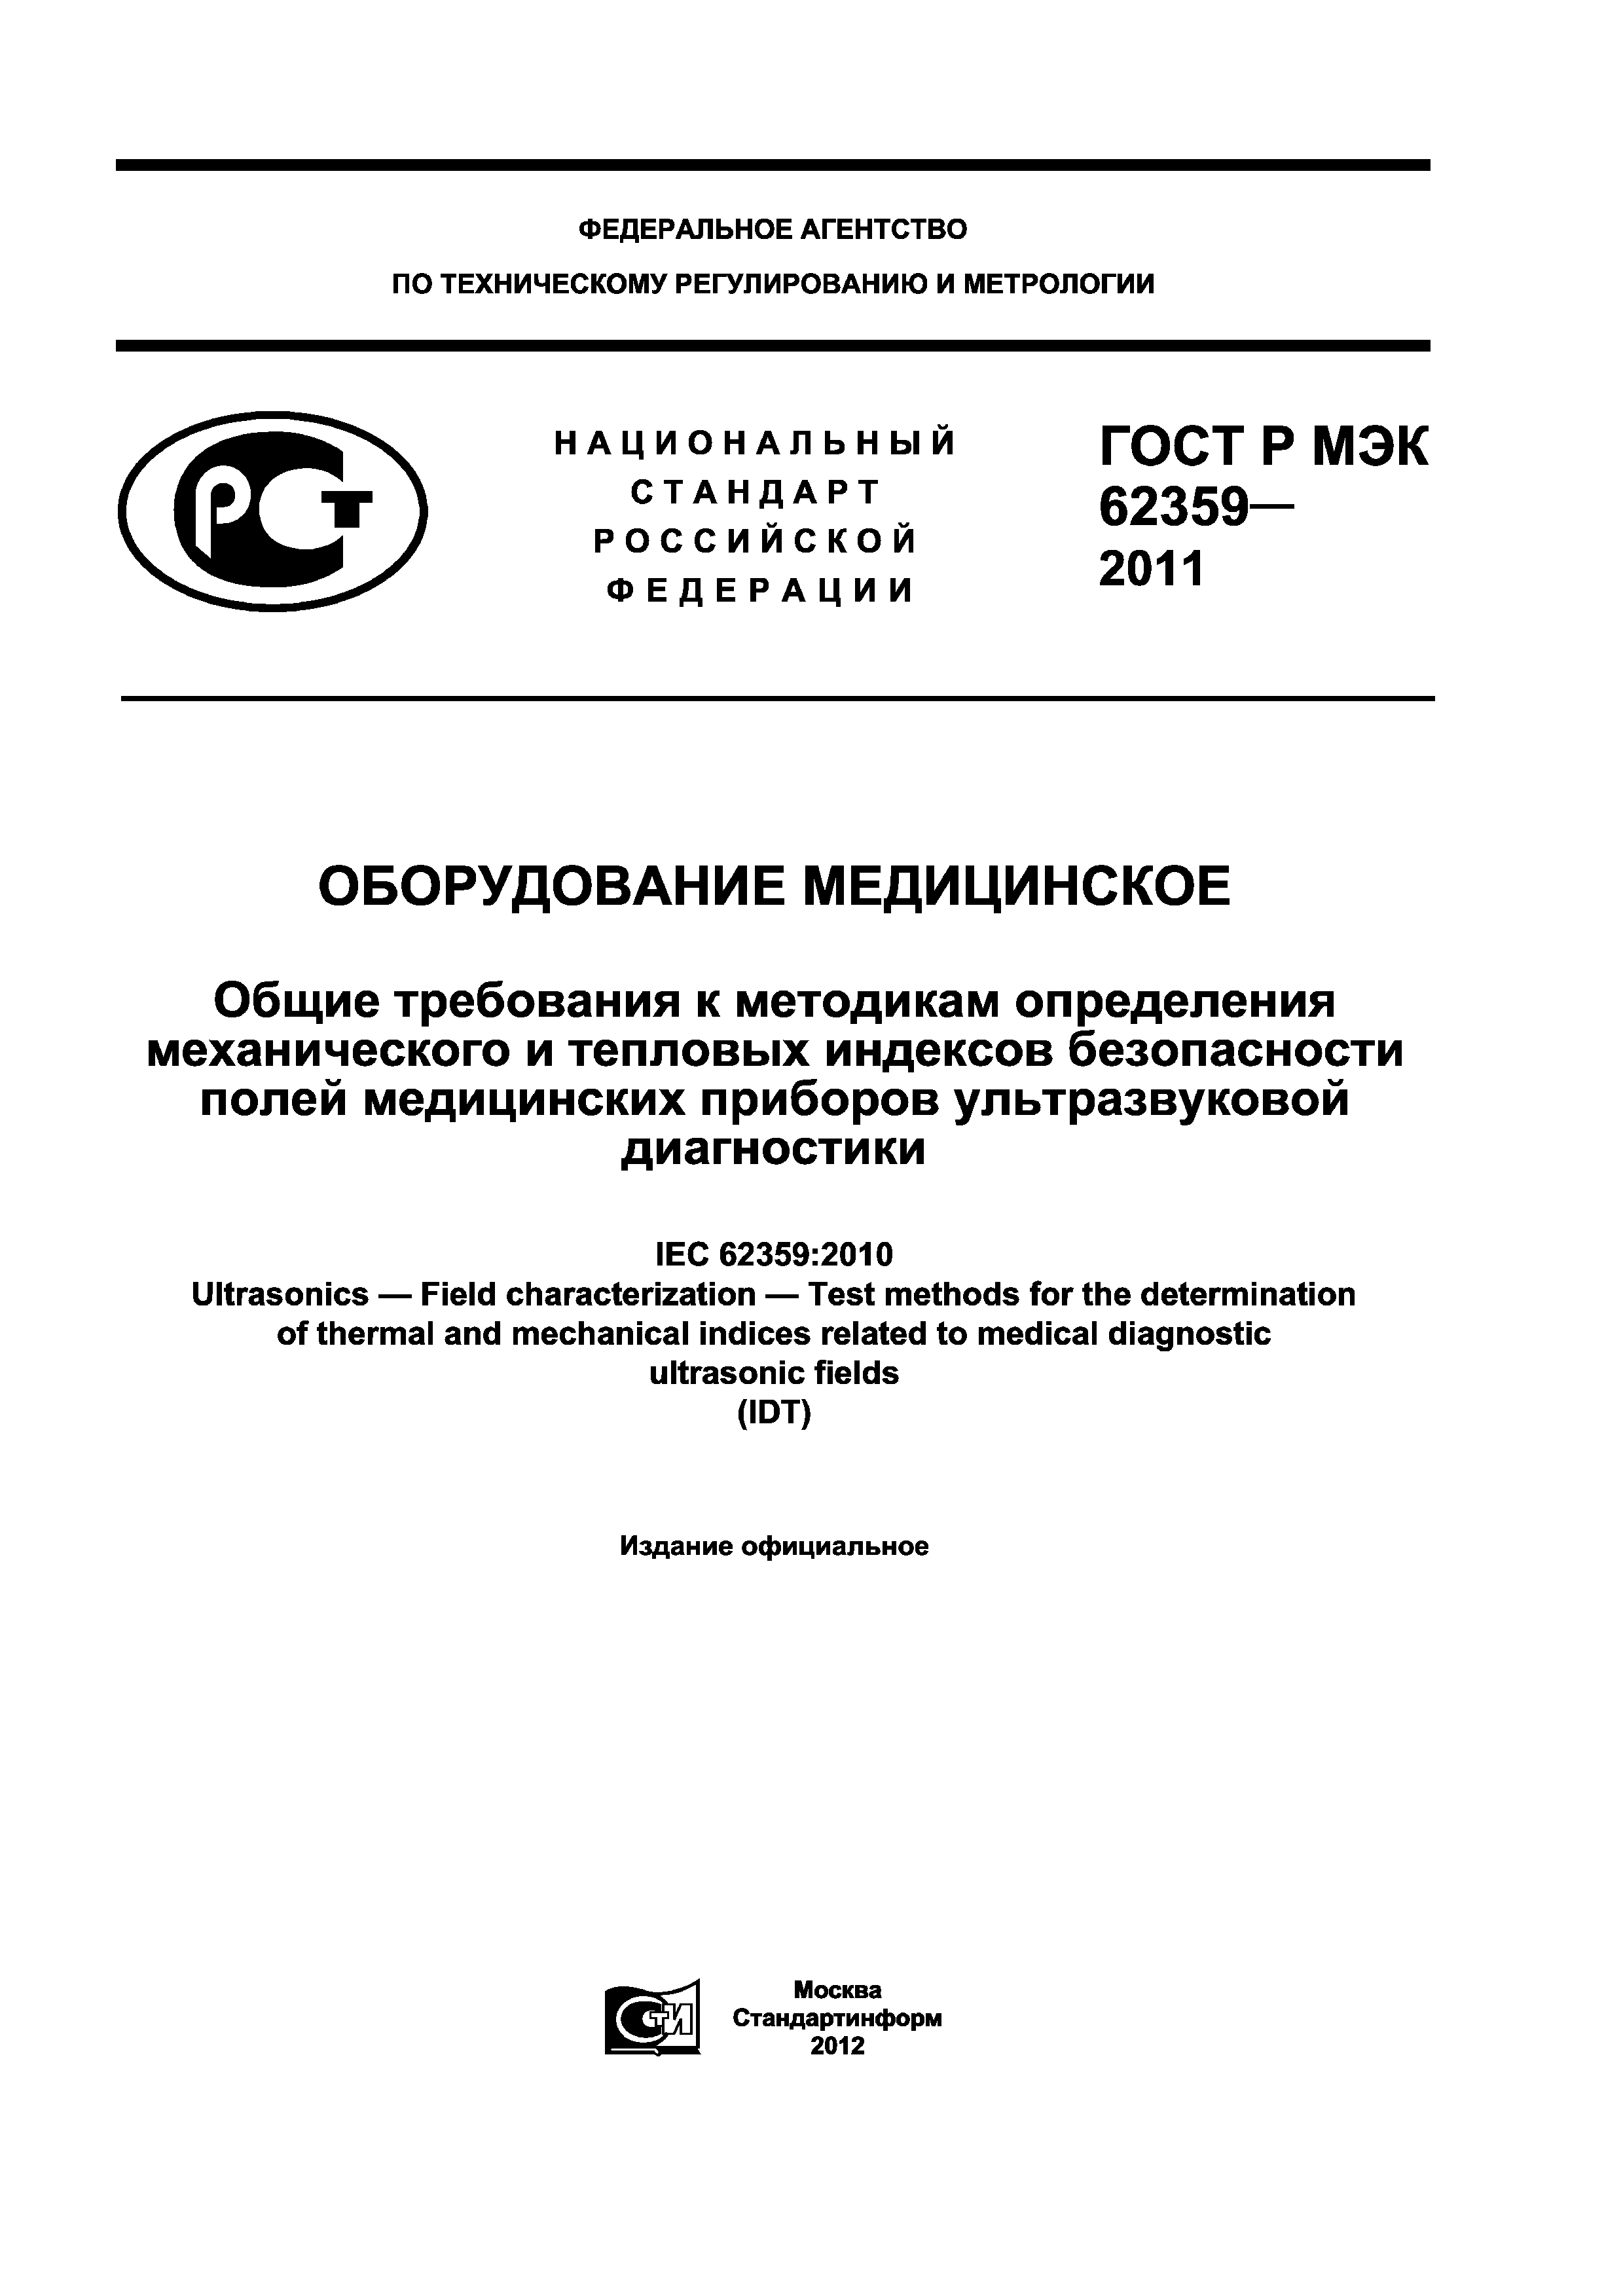 ГОСТ Р МЭК 62359-2011